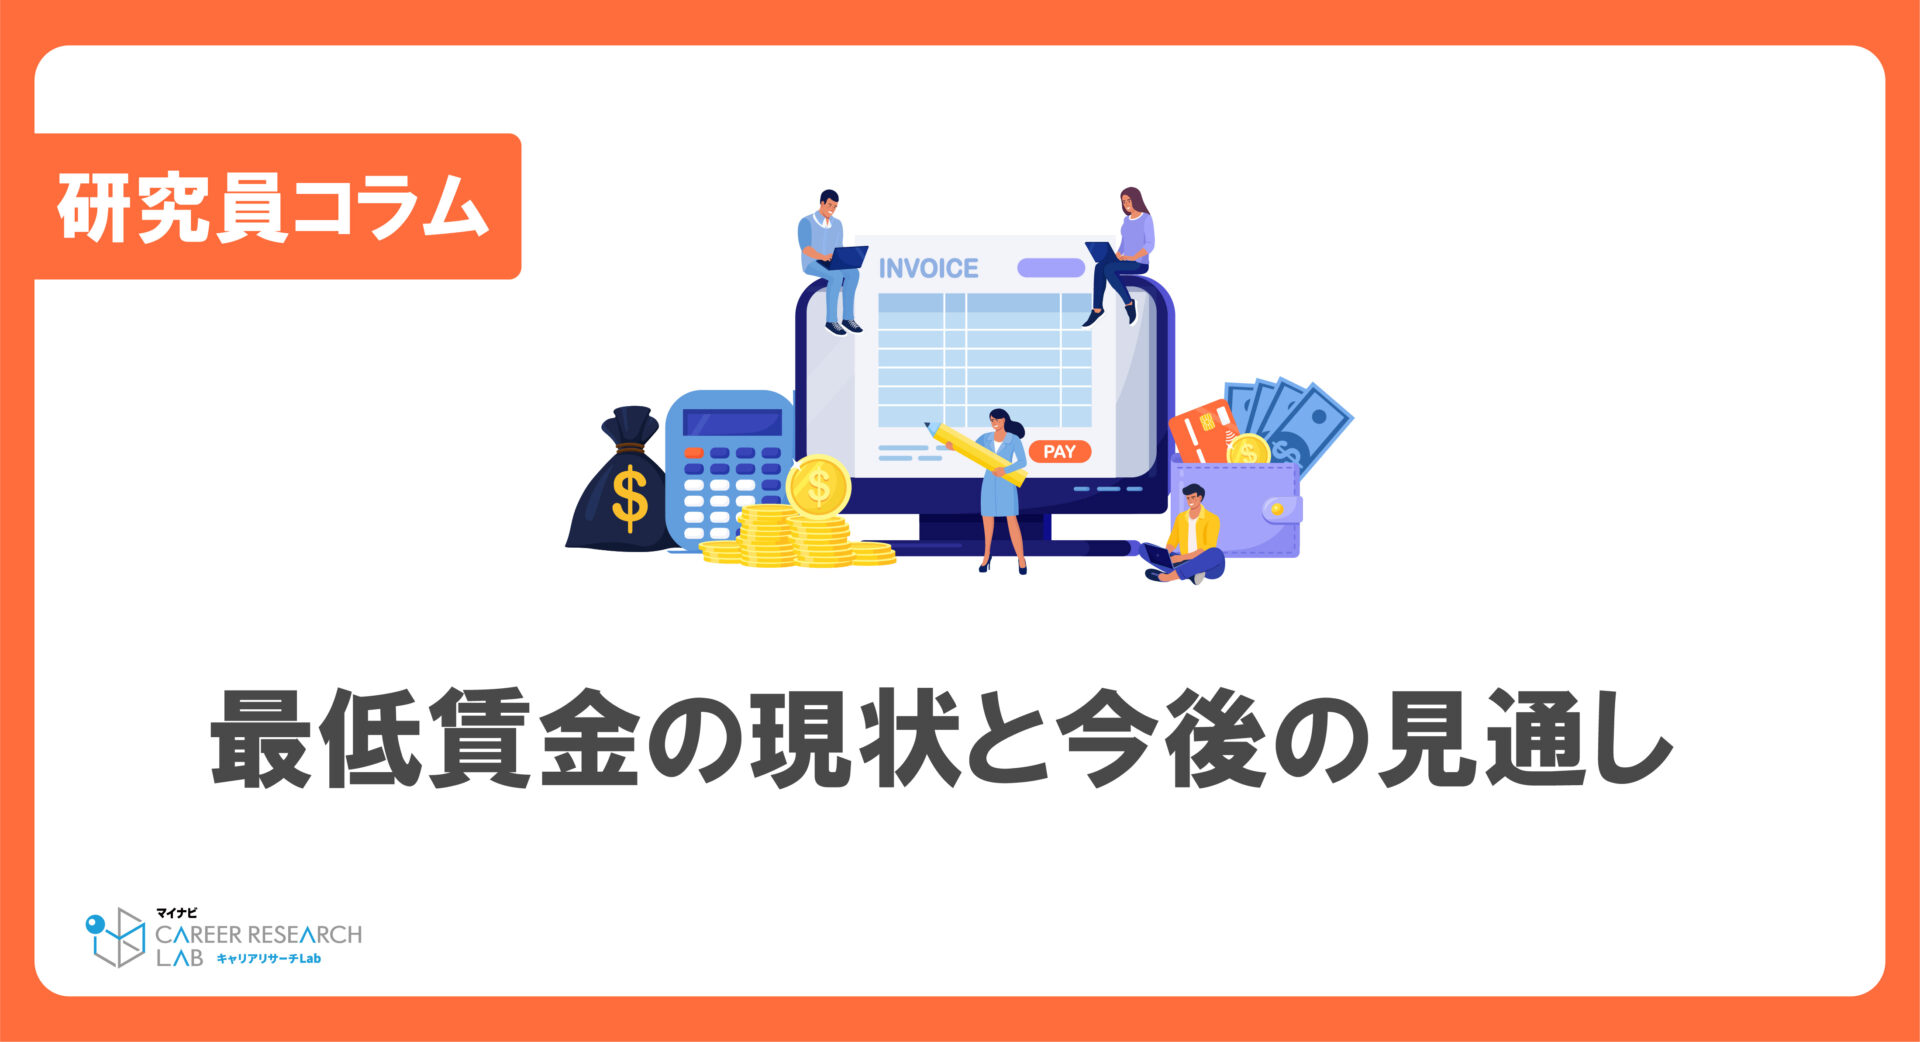 2025年に全都道府県で1,000円越えを目指す、最低賃金の現状と今後の見通し